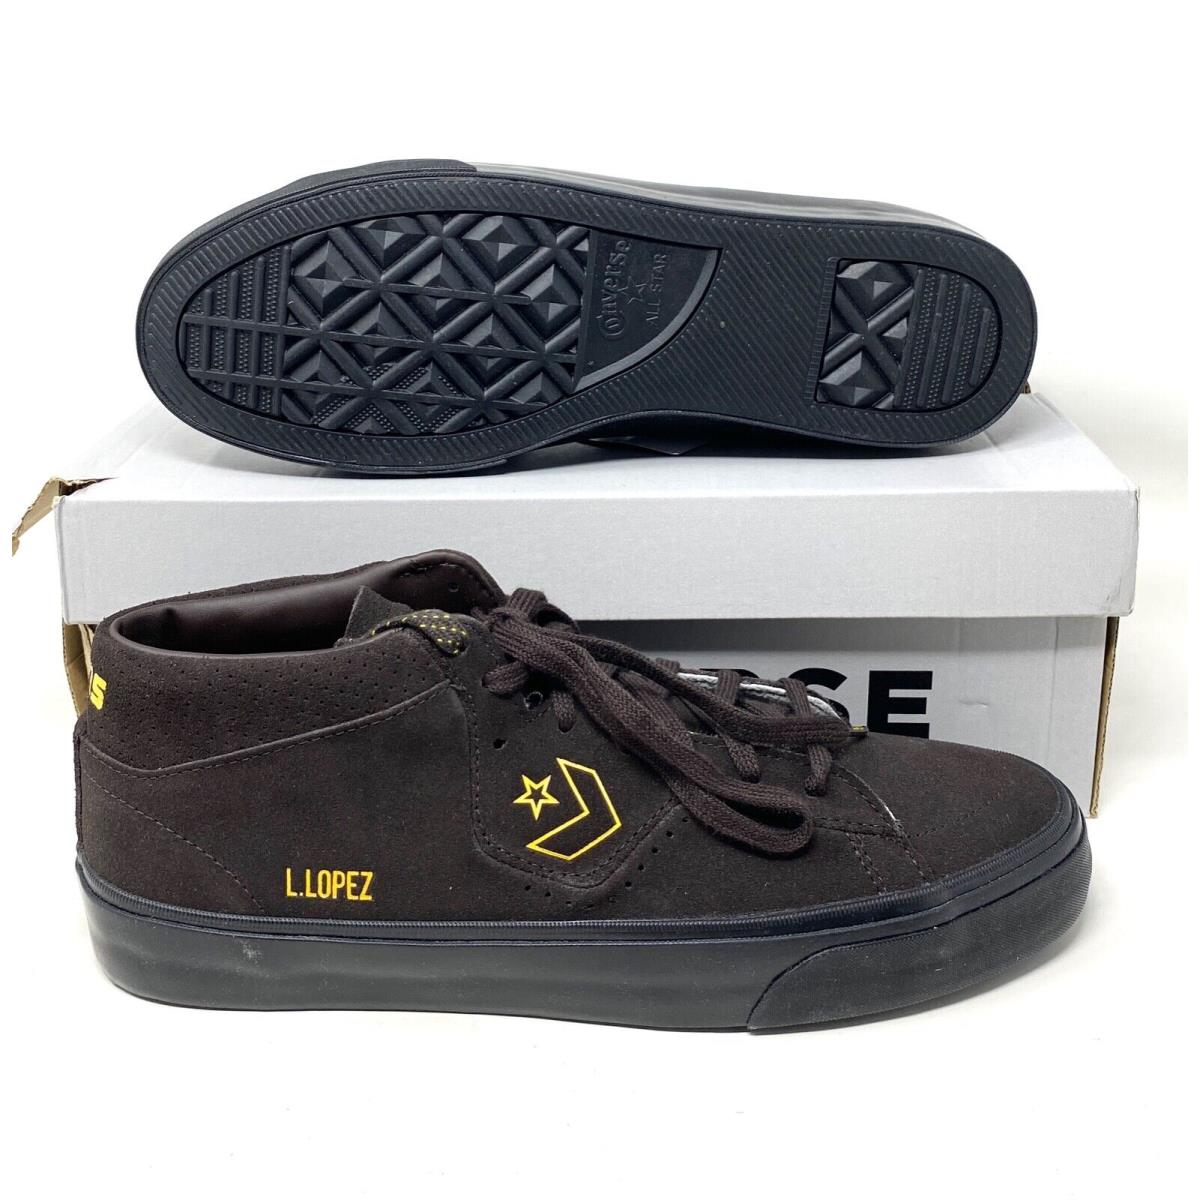 Converse shoes Louie Lopez Pro - Brown 4